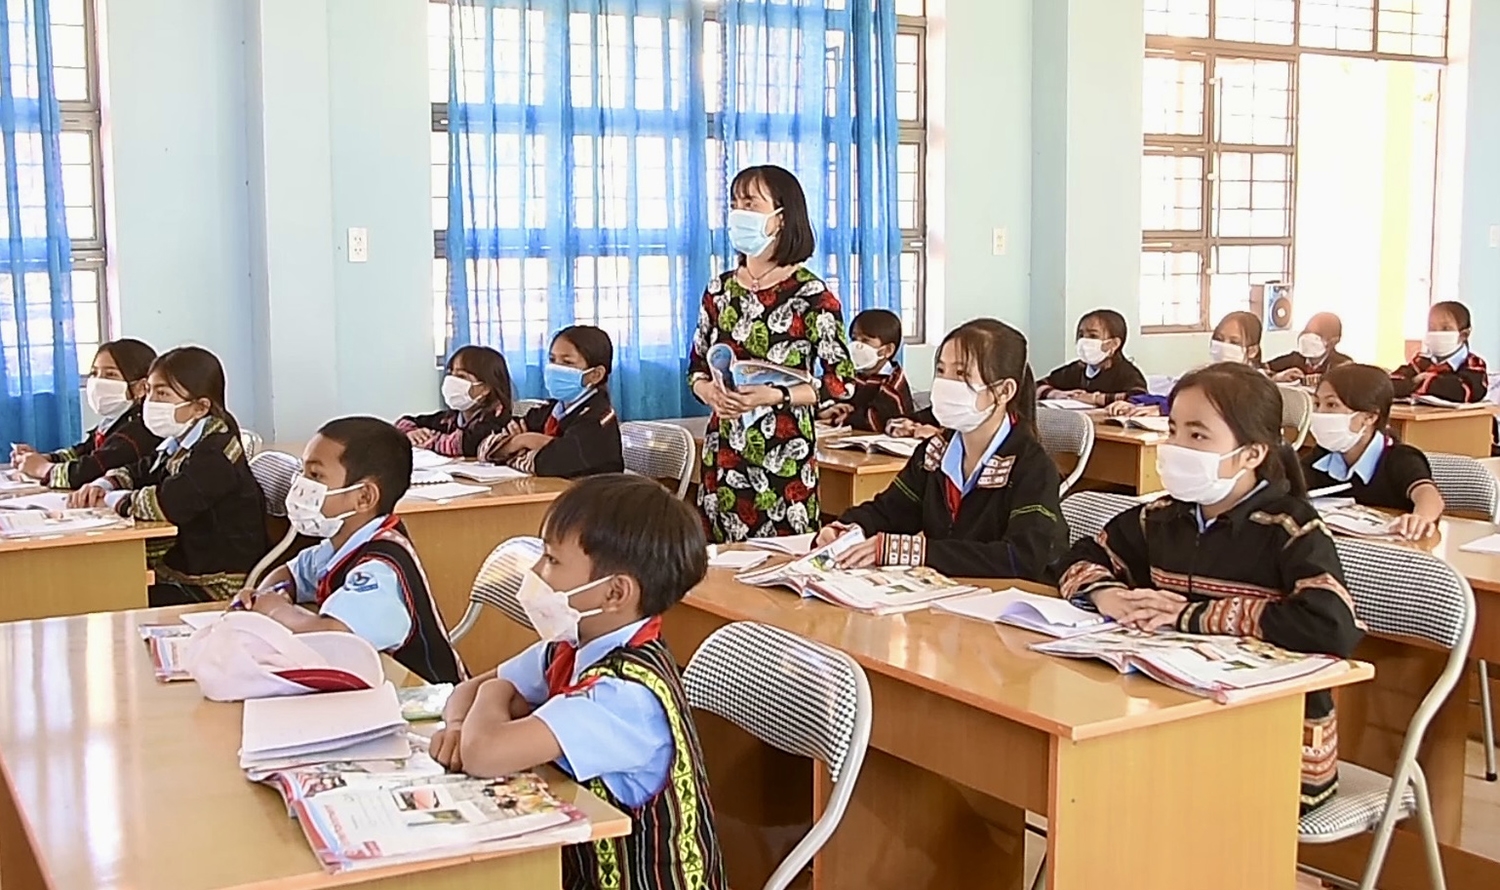 Đến năm 2025, trên 90% người dân vùng DTTS tỉnh Gia Lai đọc thông, viết thạo tiếng phổ thông